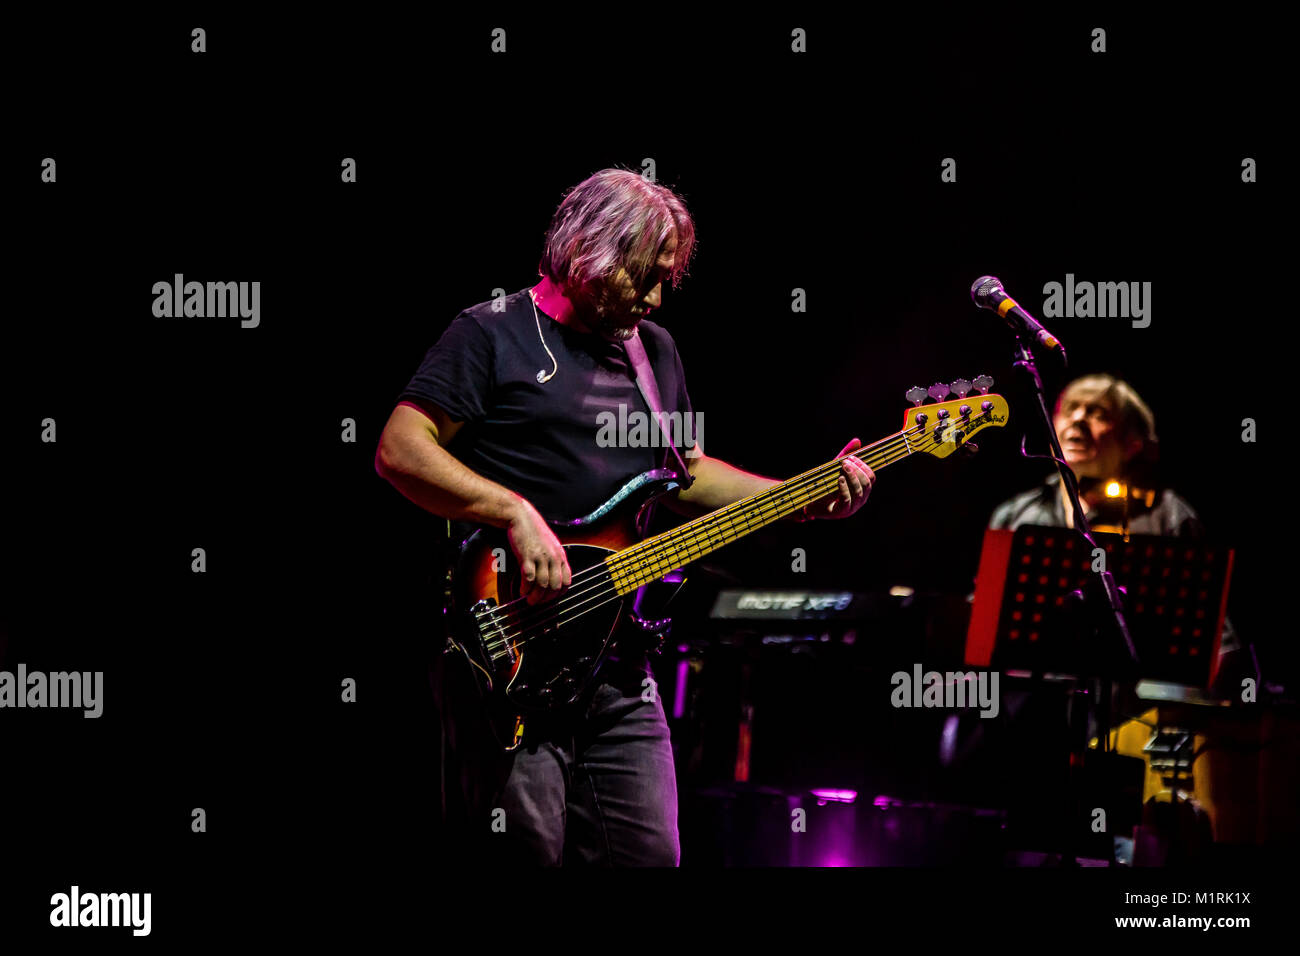 Teatro Duse, Bologna, Italien. Die italienische Rockband, Nomadi, während einer ihrer letzten Tour durchgeführt. Kredit Luigi Rizzo/Alamy leben Nachrichten Stockfoto